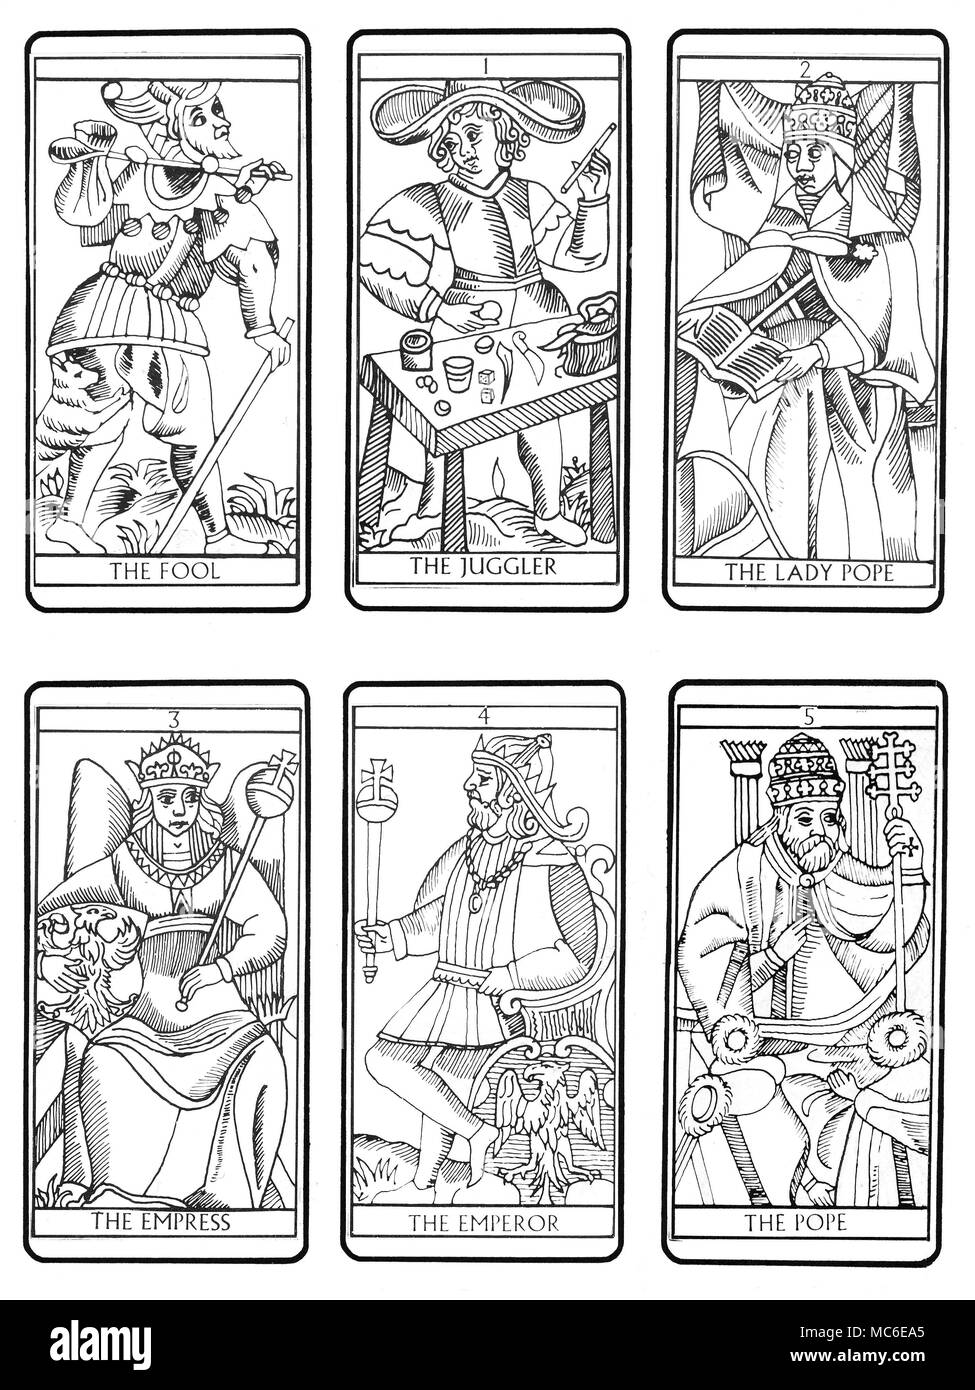 Tarocchi - MARSIGLIA DECK primi sei della sequenza di 22 carte dei Tarocchi  (secondo il tradizionale design di Marsiglia), da zero card (Lo stolto),  attraverso il giocoliere, la signora Papa, Imperatrice, l'Imperatore